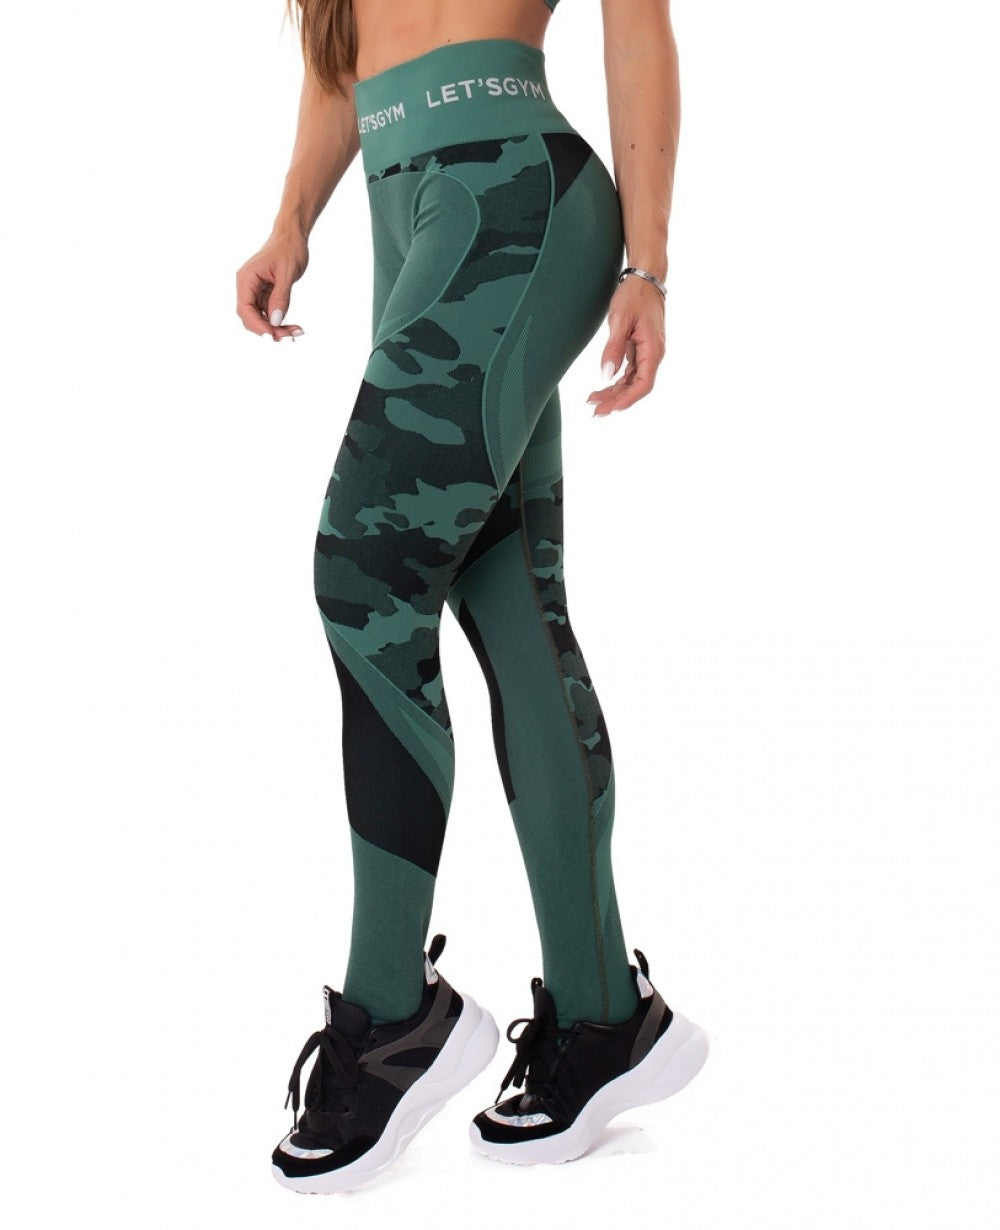 Camouflage Fitness Leggings for Women (3 Styles) – ME SUPERHERO